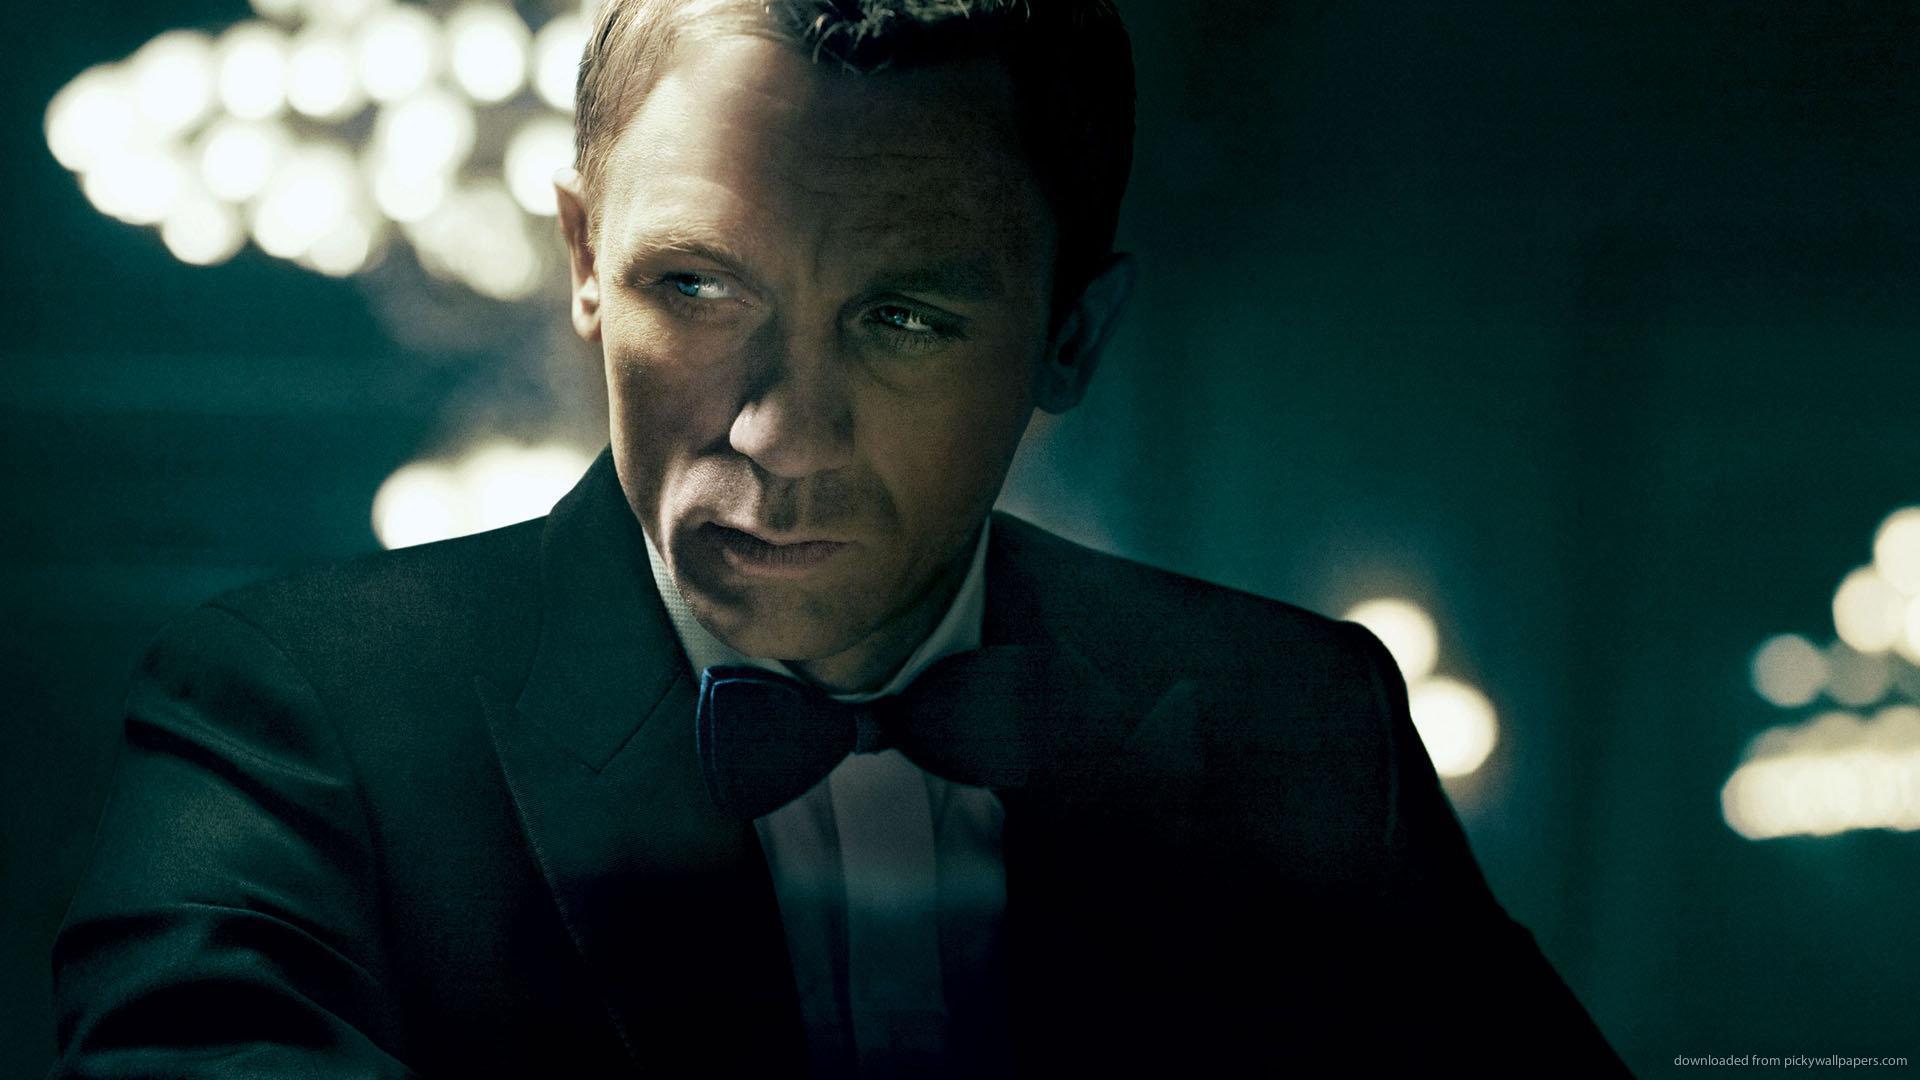 Download 1920x1080 Daniel Craig As A James Bond Wallpaper